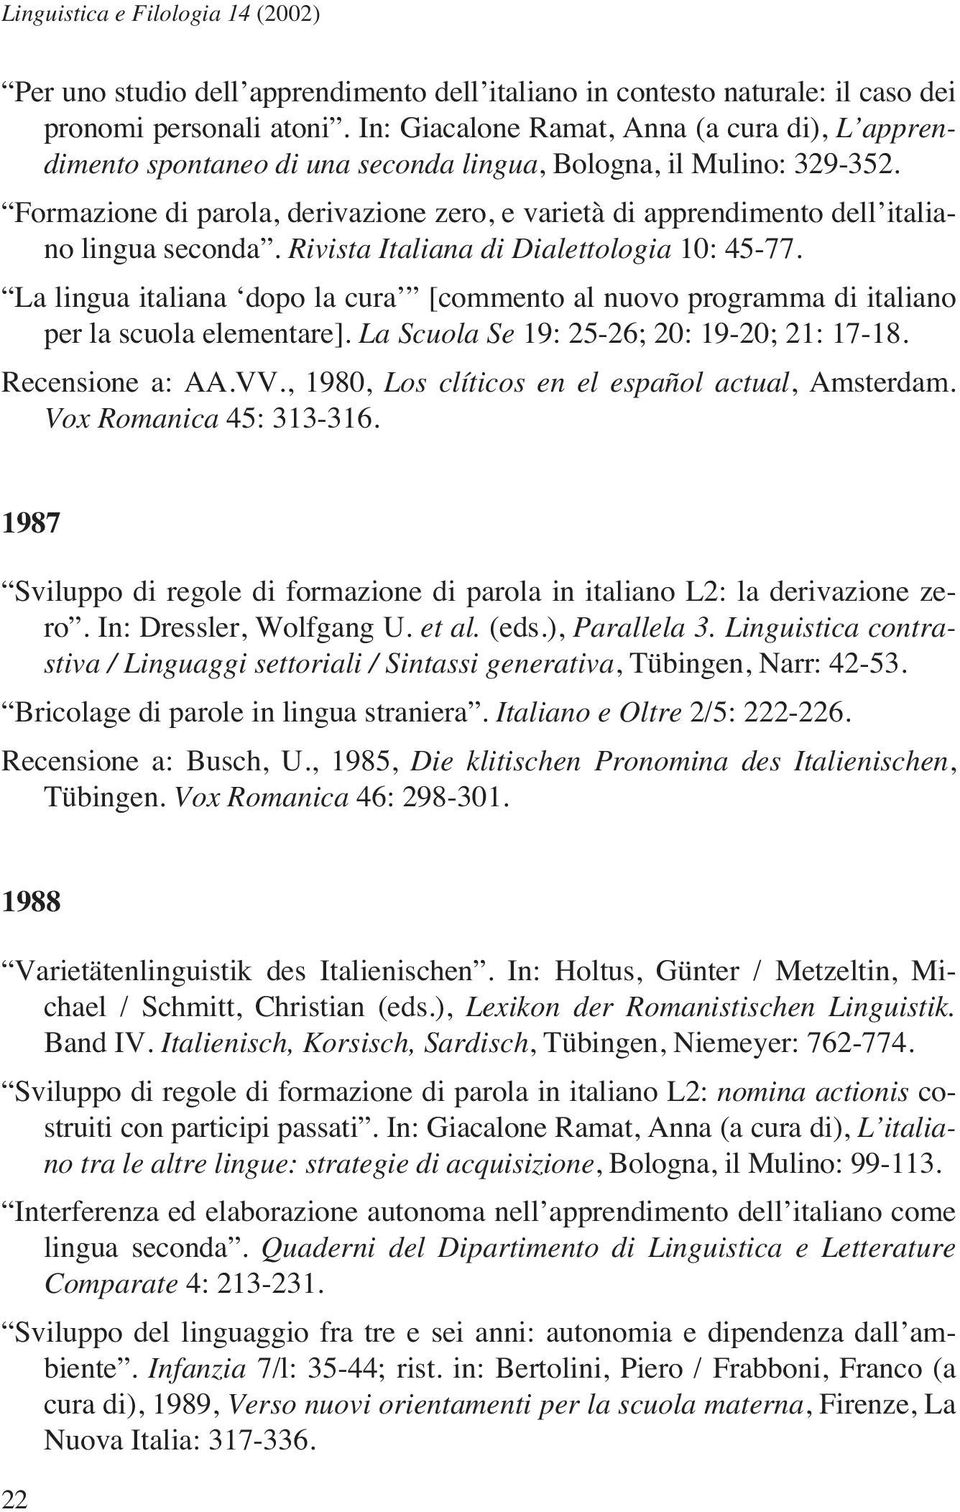 Formazione di parola, derivazione zero, e varietà di apprendimento dell italiano lingua seconda. Rivista Italiana di Dialettologia 10: 45-77.